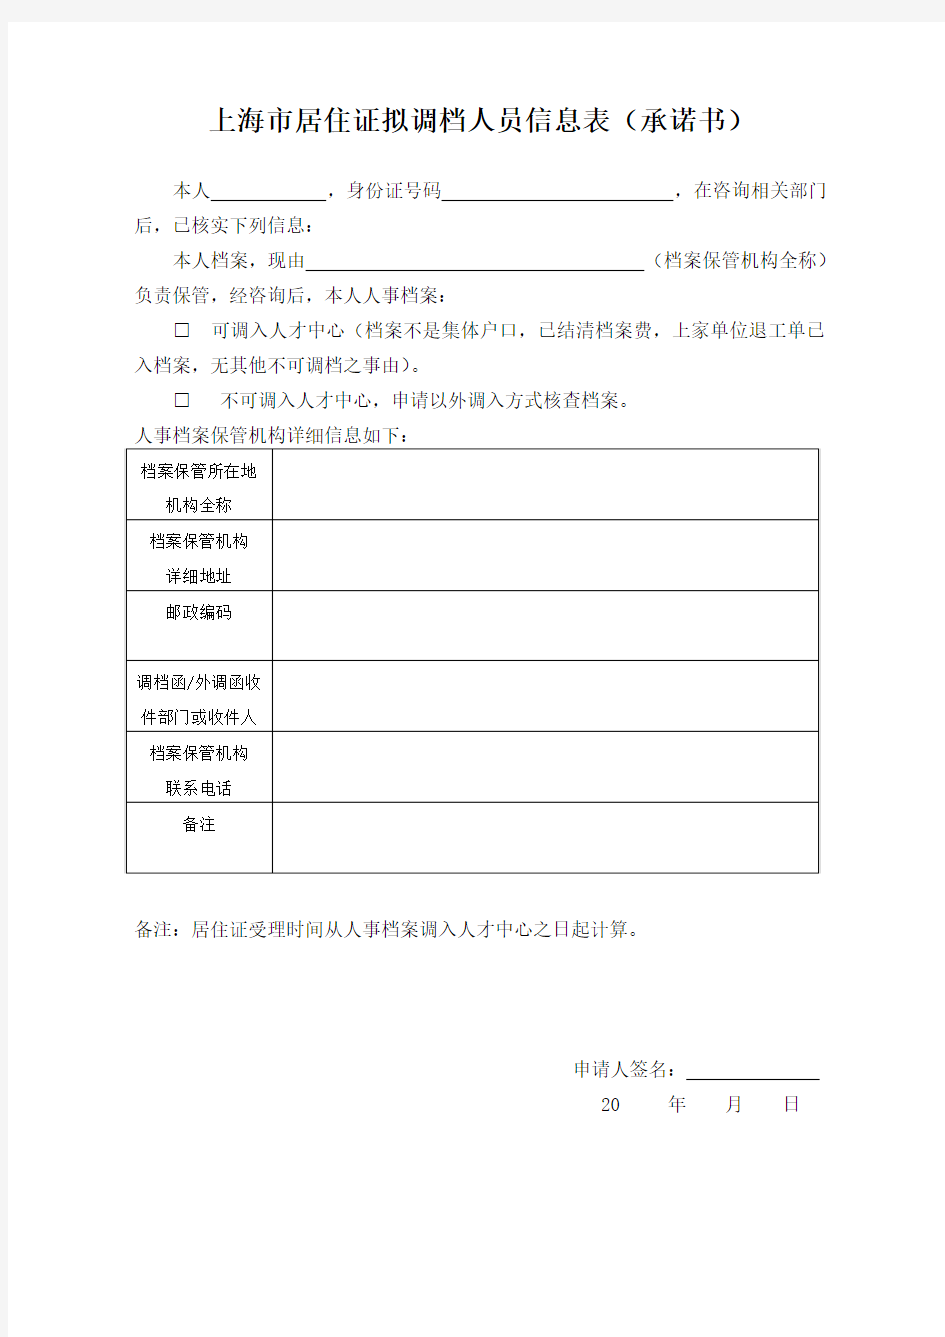 上海市居住证拟调档人员信息表(承诺书)